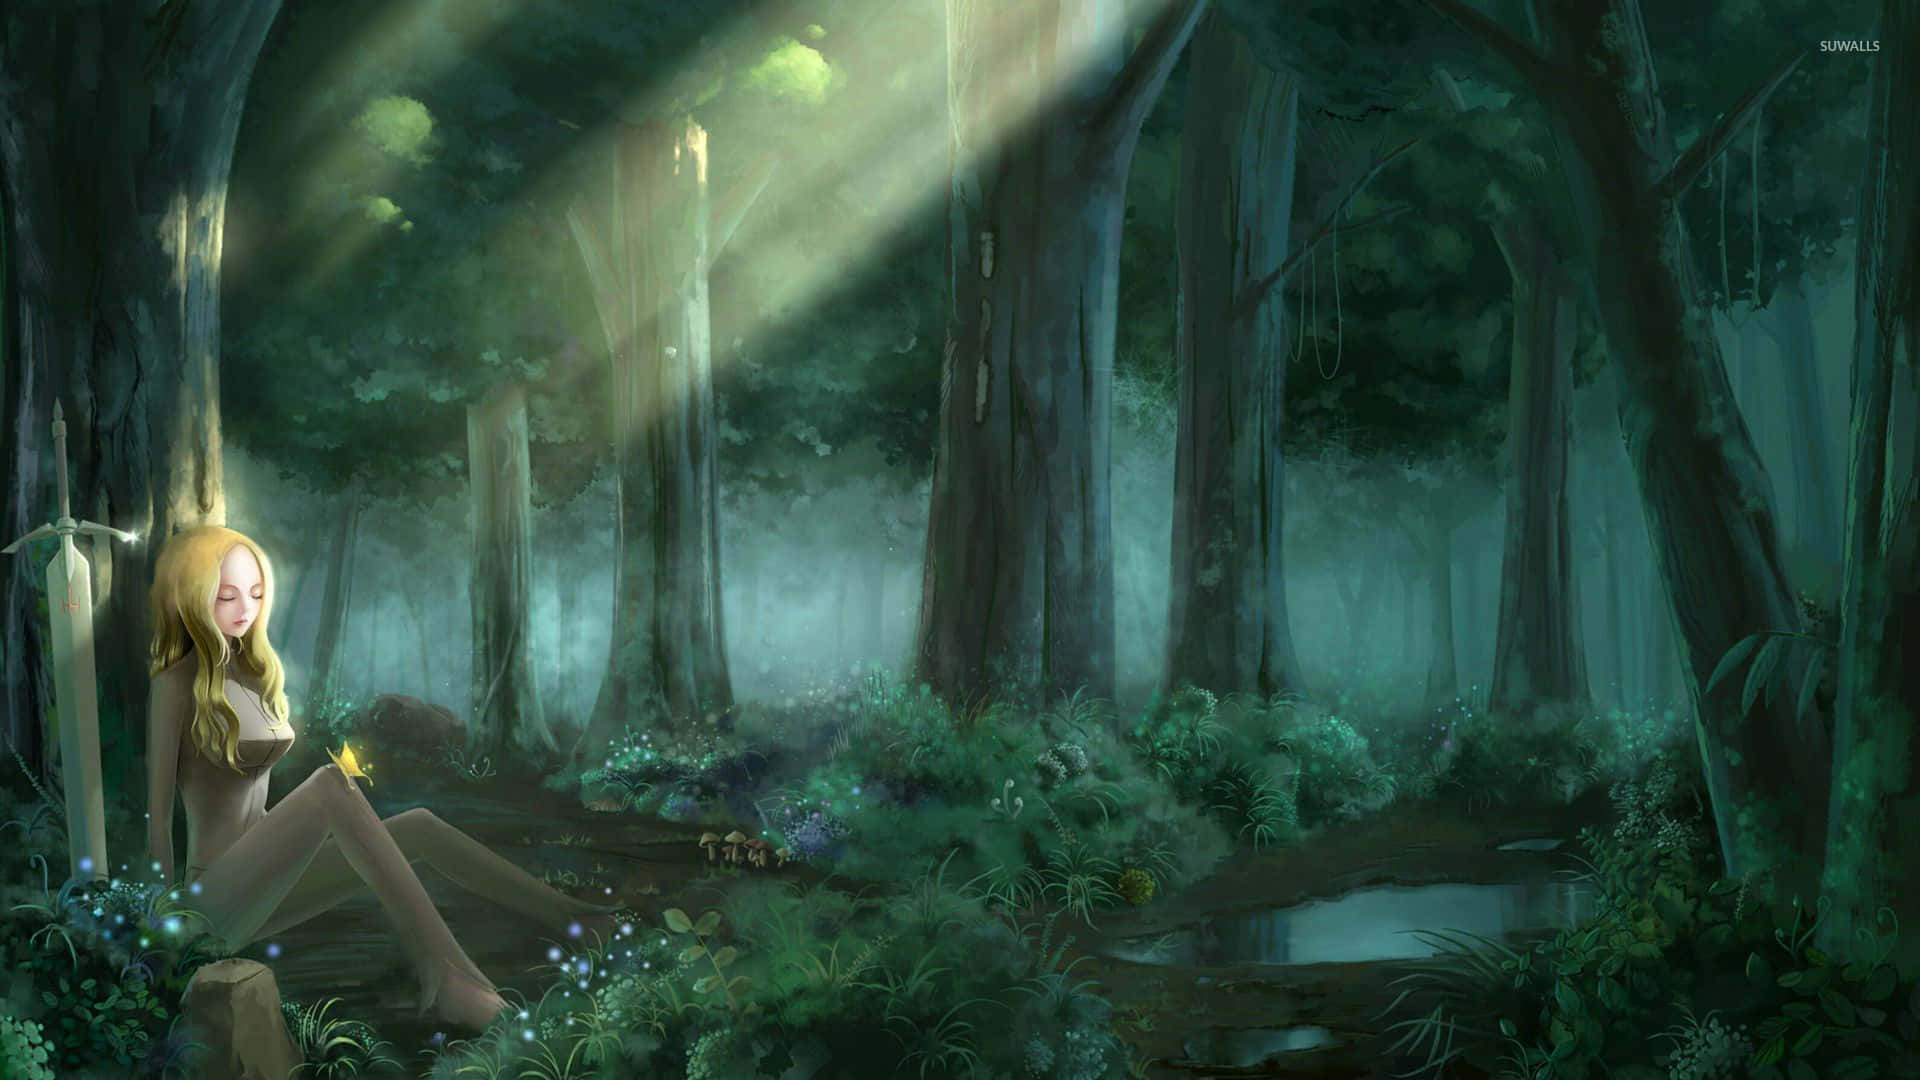 Nyd den magiske atmosfære i Naturen i denne Anime Forest. Wallpaper